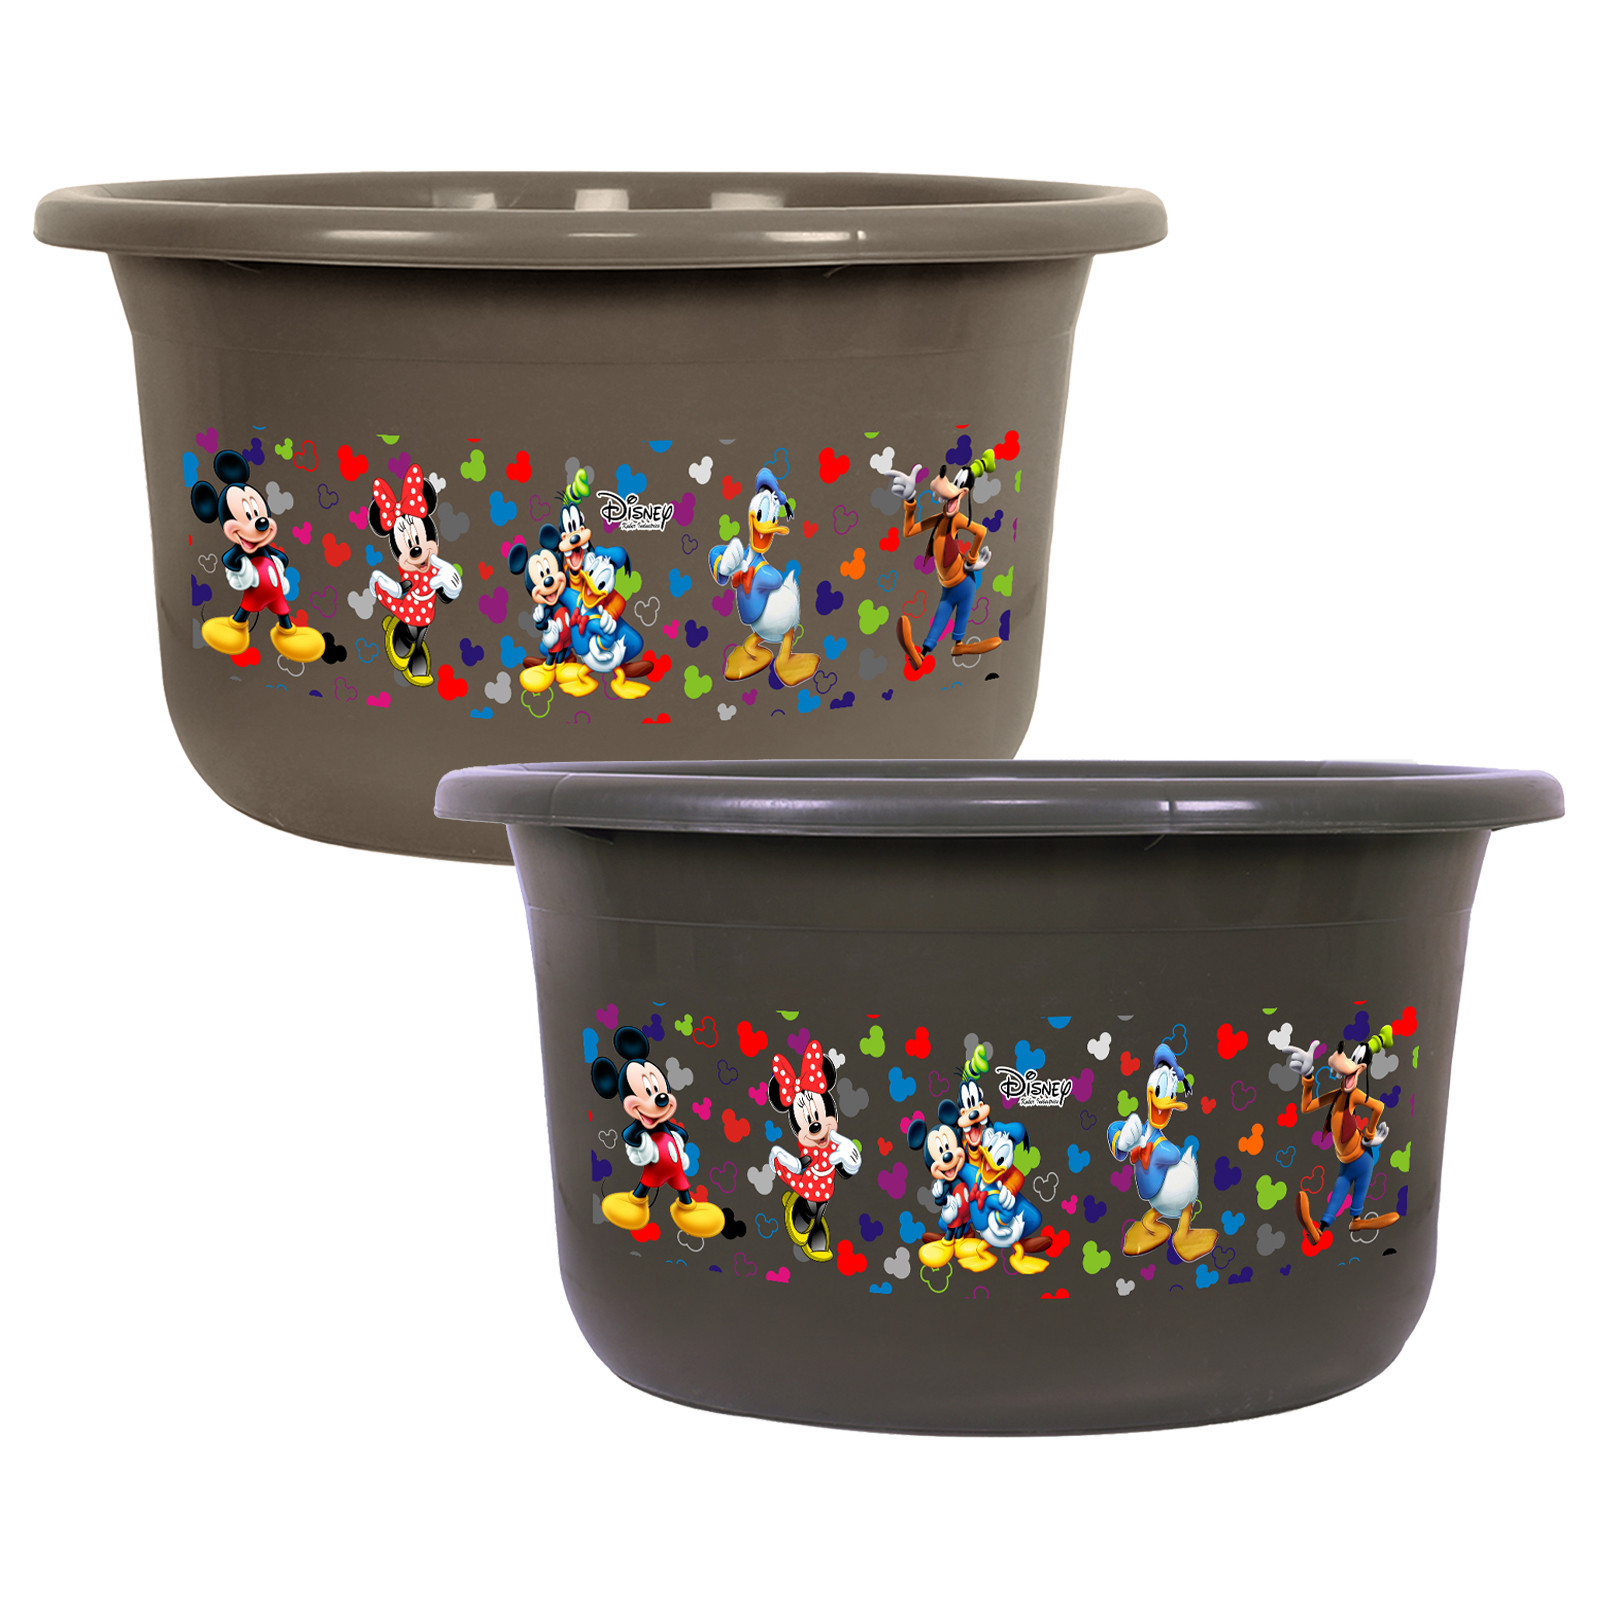 Kuber Industries Disney Bath Tub | Versatile Utility Gaint Tub | Plastic Bath Tub for Baby | Clothes Washing Tub For Bathroom | Feeding Pan Tub | TUB-25 LTR | Pack of 2 | Multi